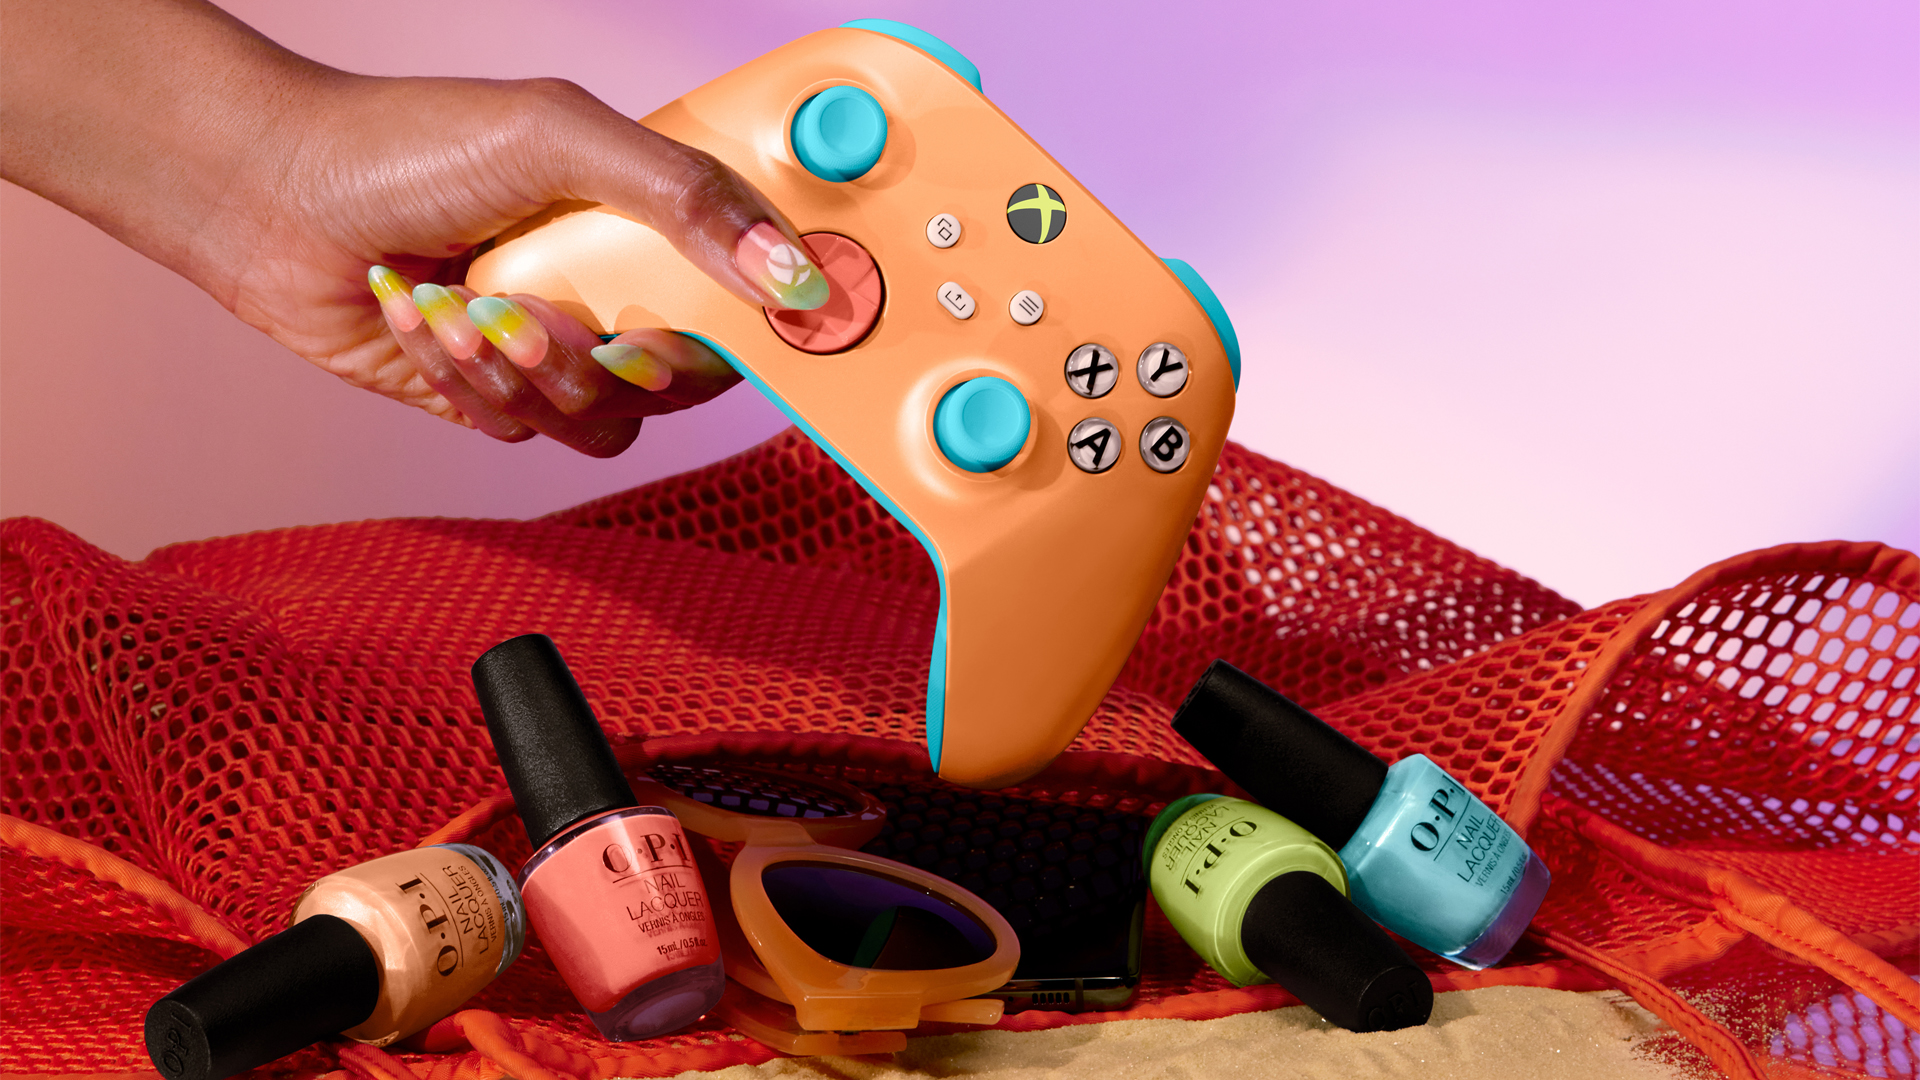 Xbox und OPI feiern den Sommer mit einem exklusiven Controller in knalligen Farben